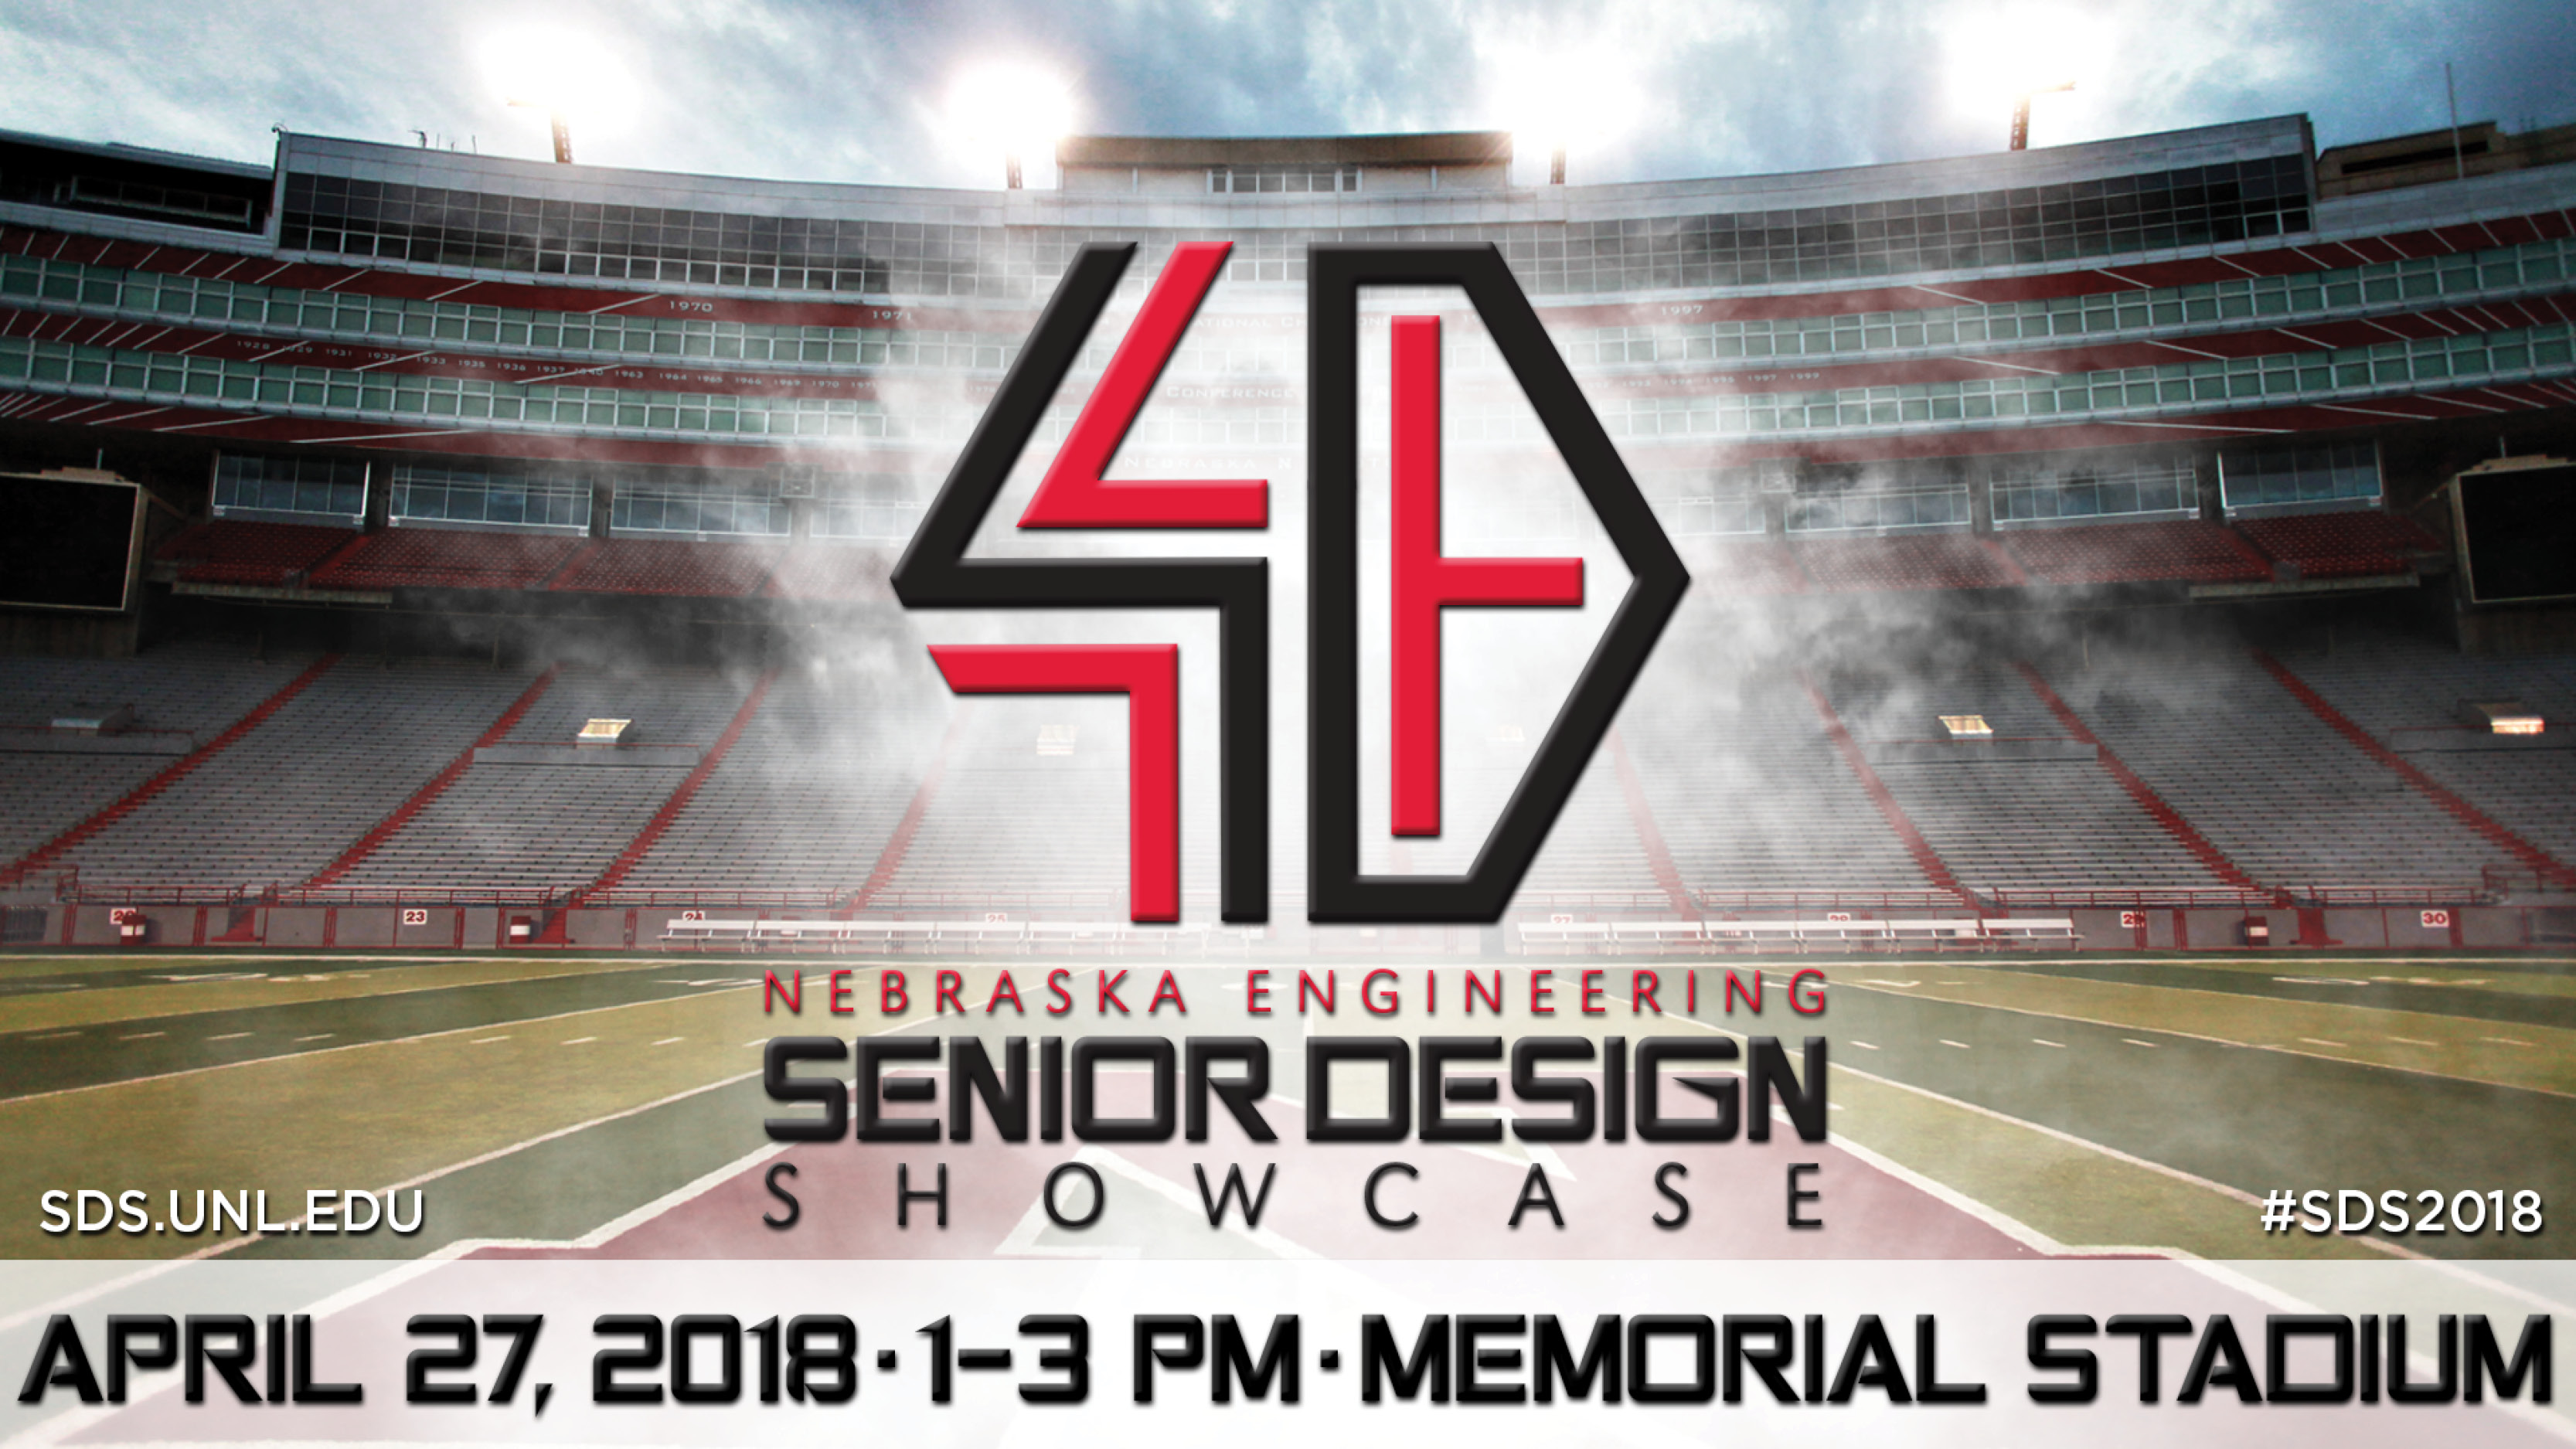 The Senior Design Showcase is April 27 at Memorial Stadium.